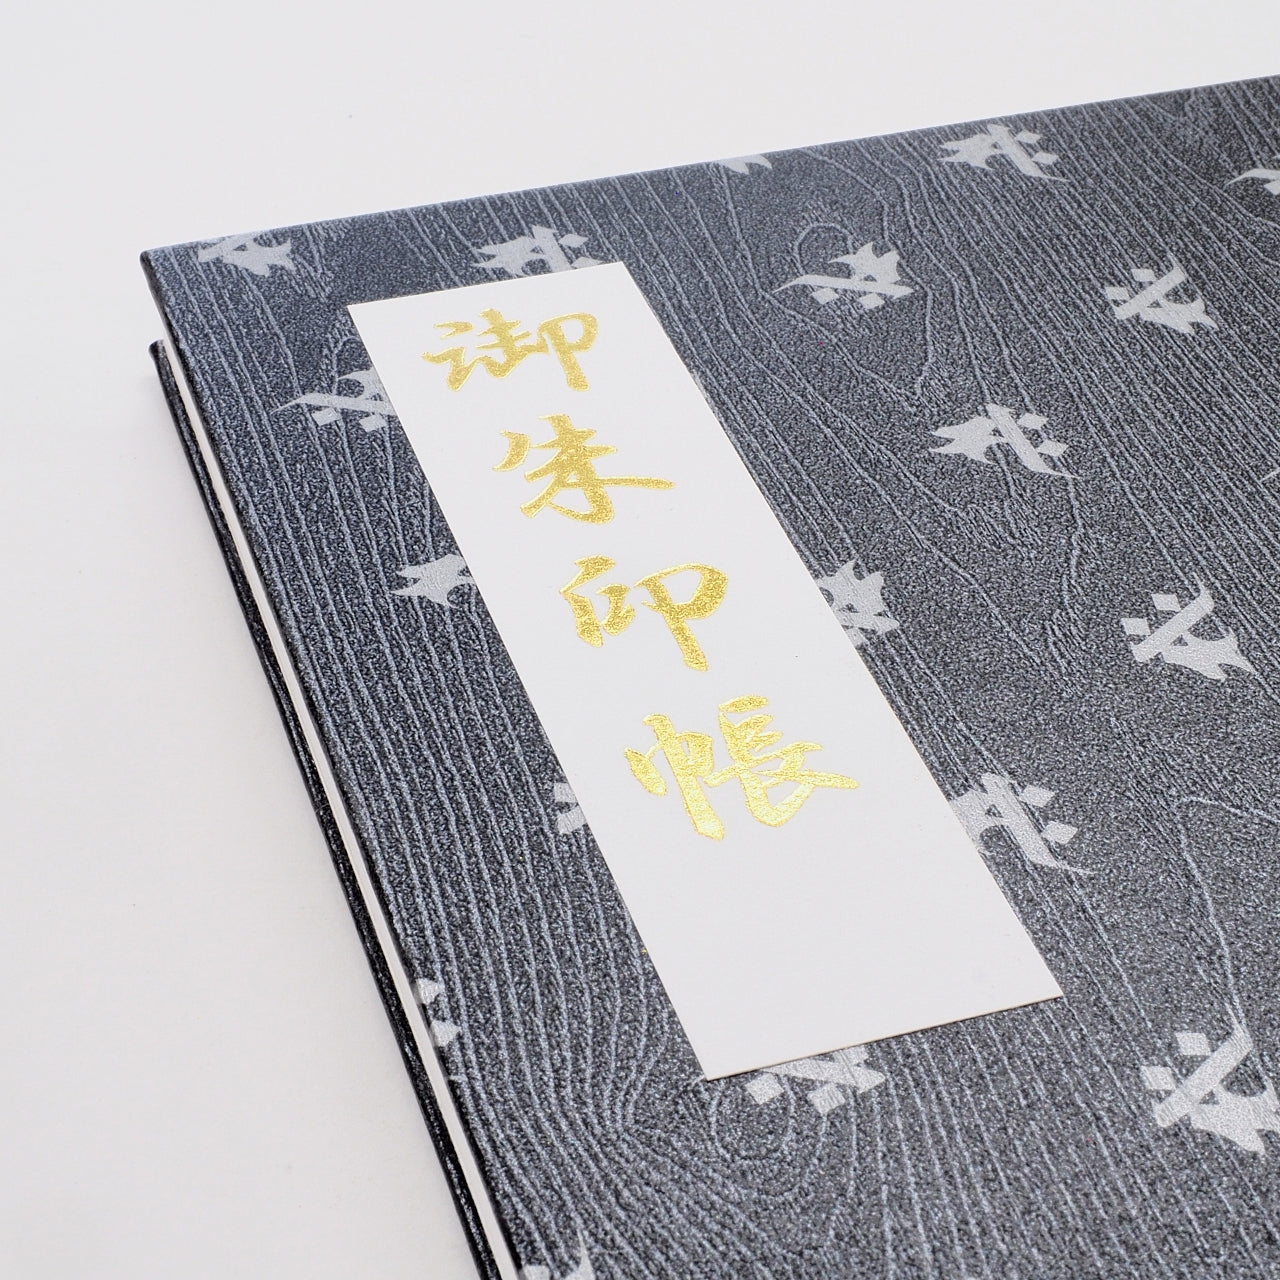 Goshuin book “Rinzen” flyer Sanskrit characters: Seishi Bodhisattva